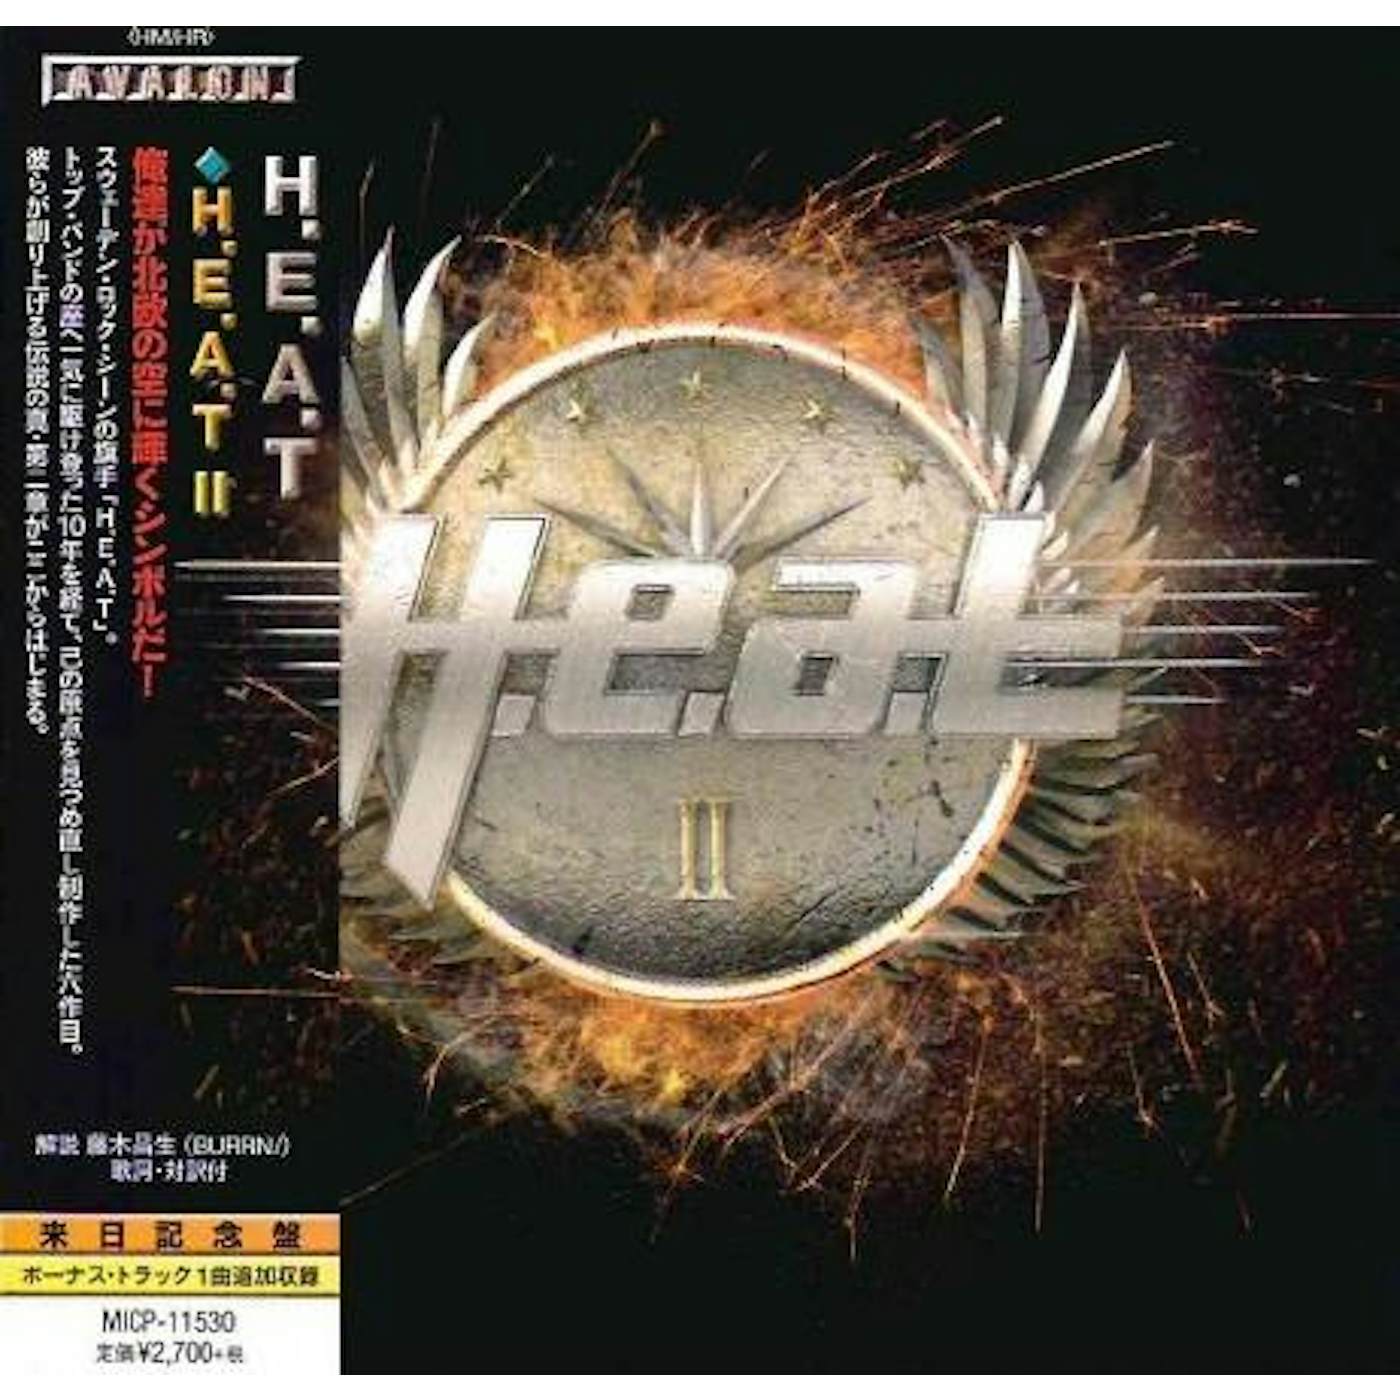 H.E.A.T 2 CD